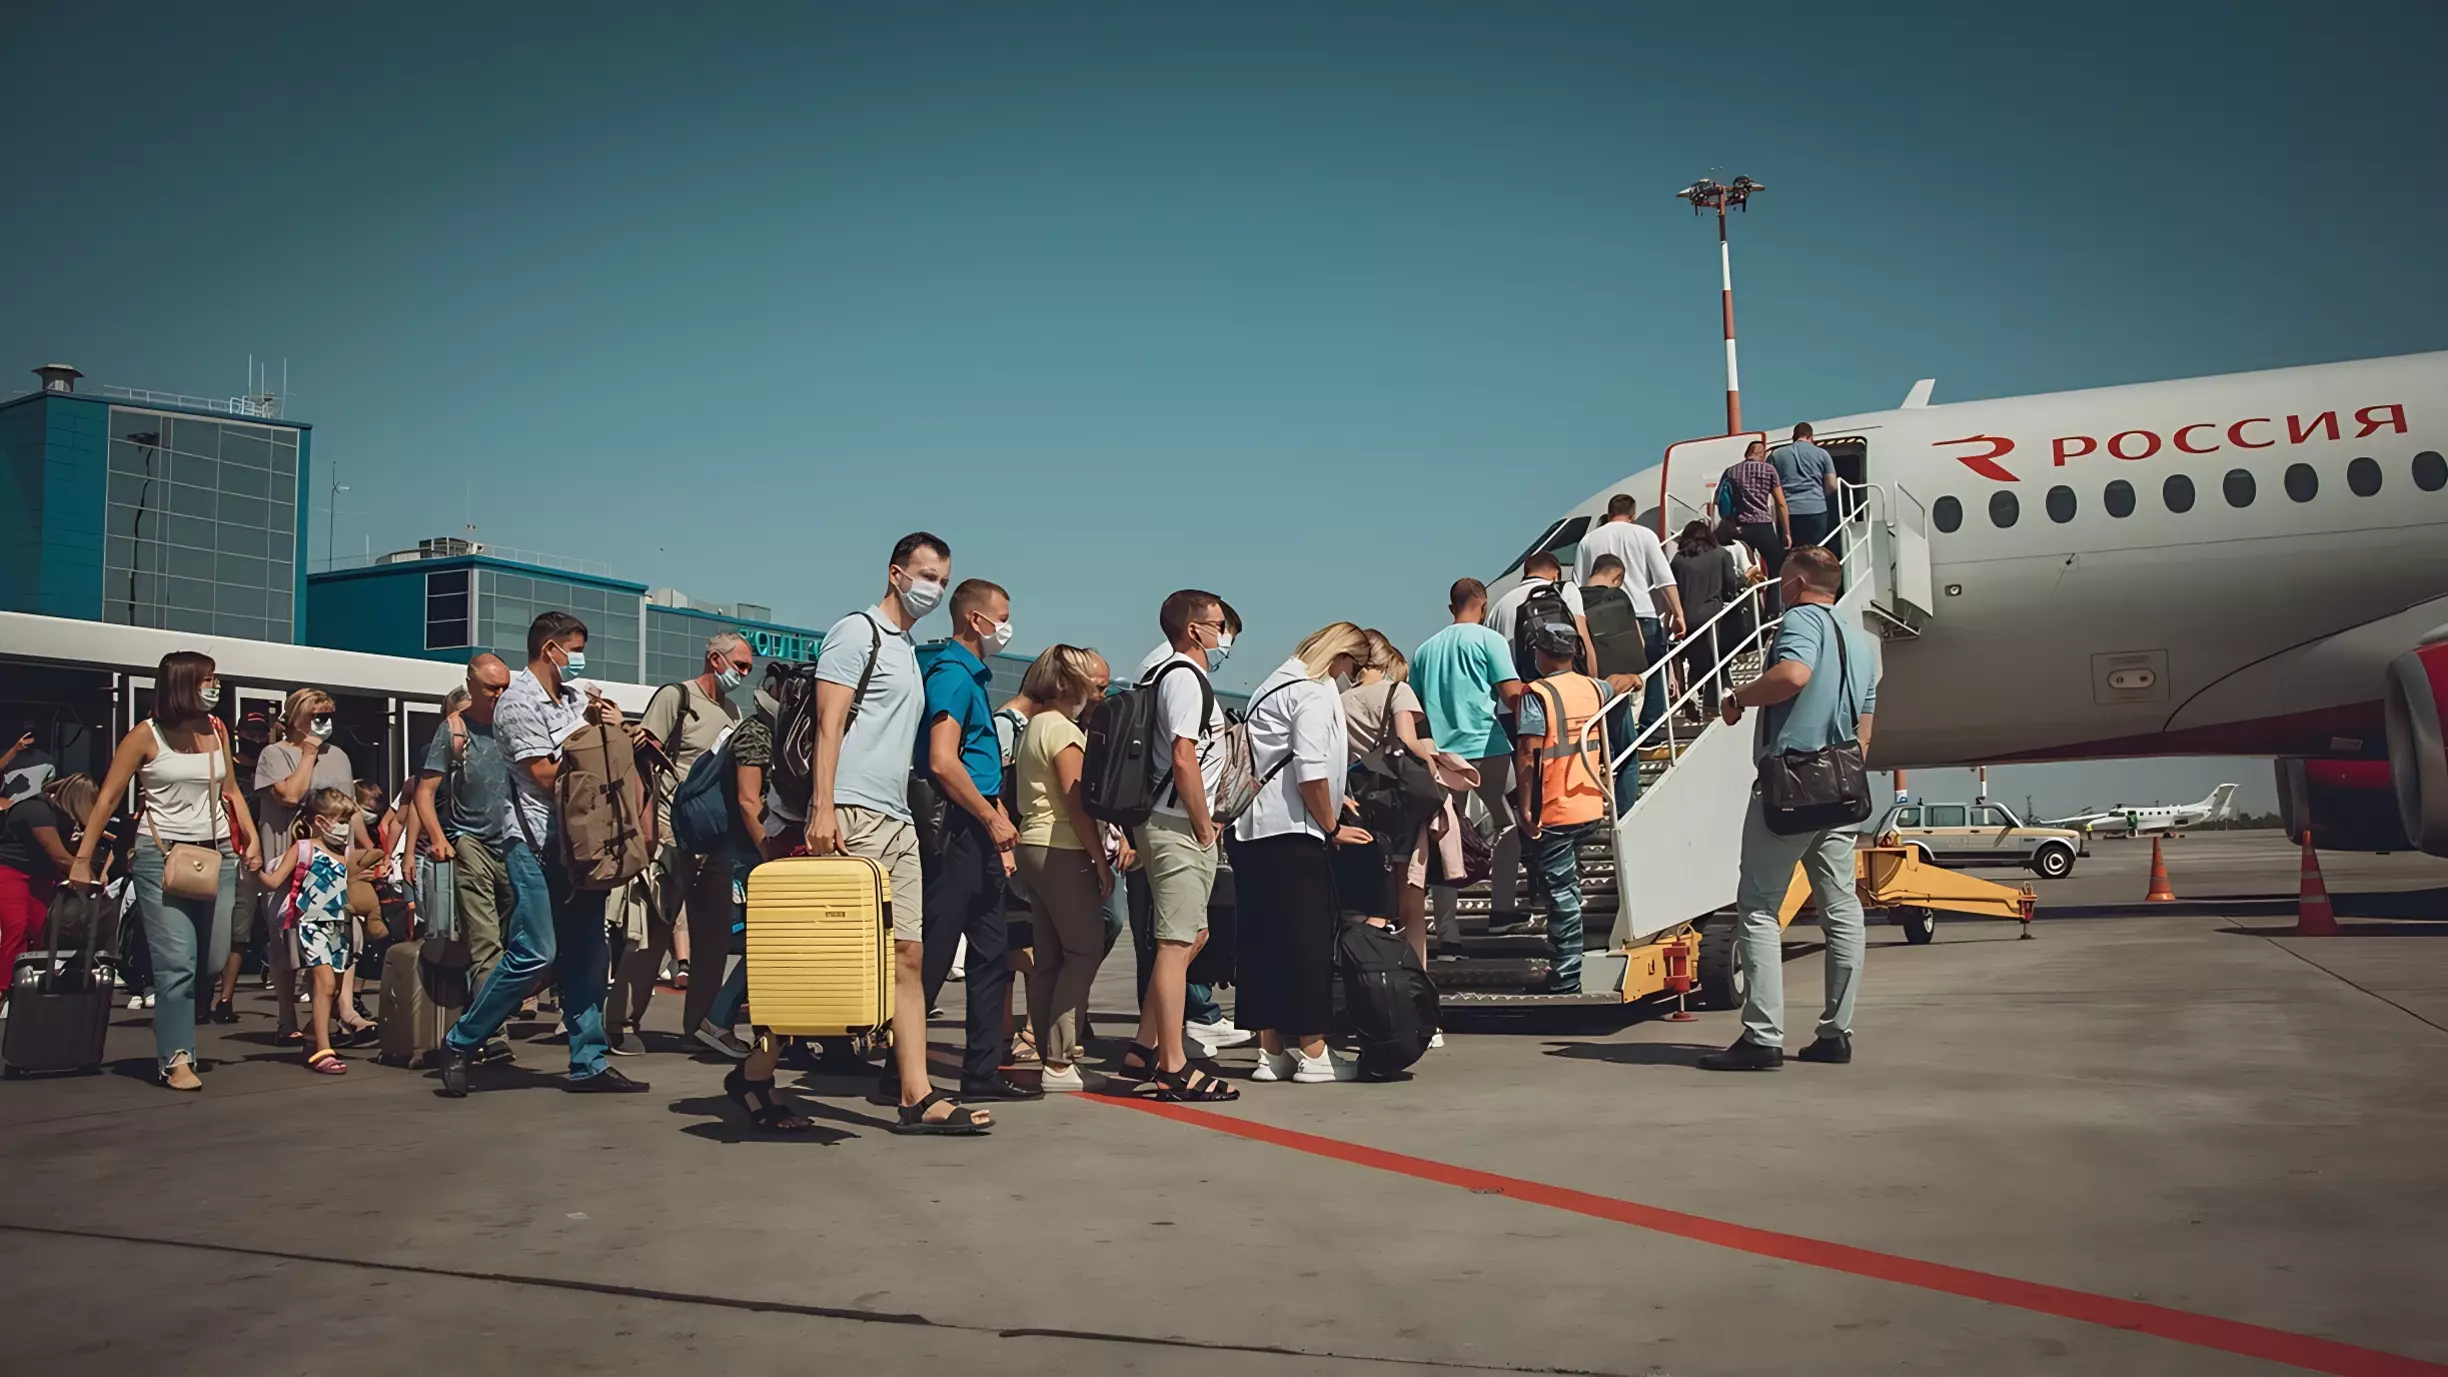 Авиабилеты с вылетом из Тюмени подорожали к 8 марта